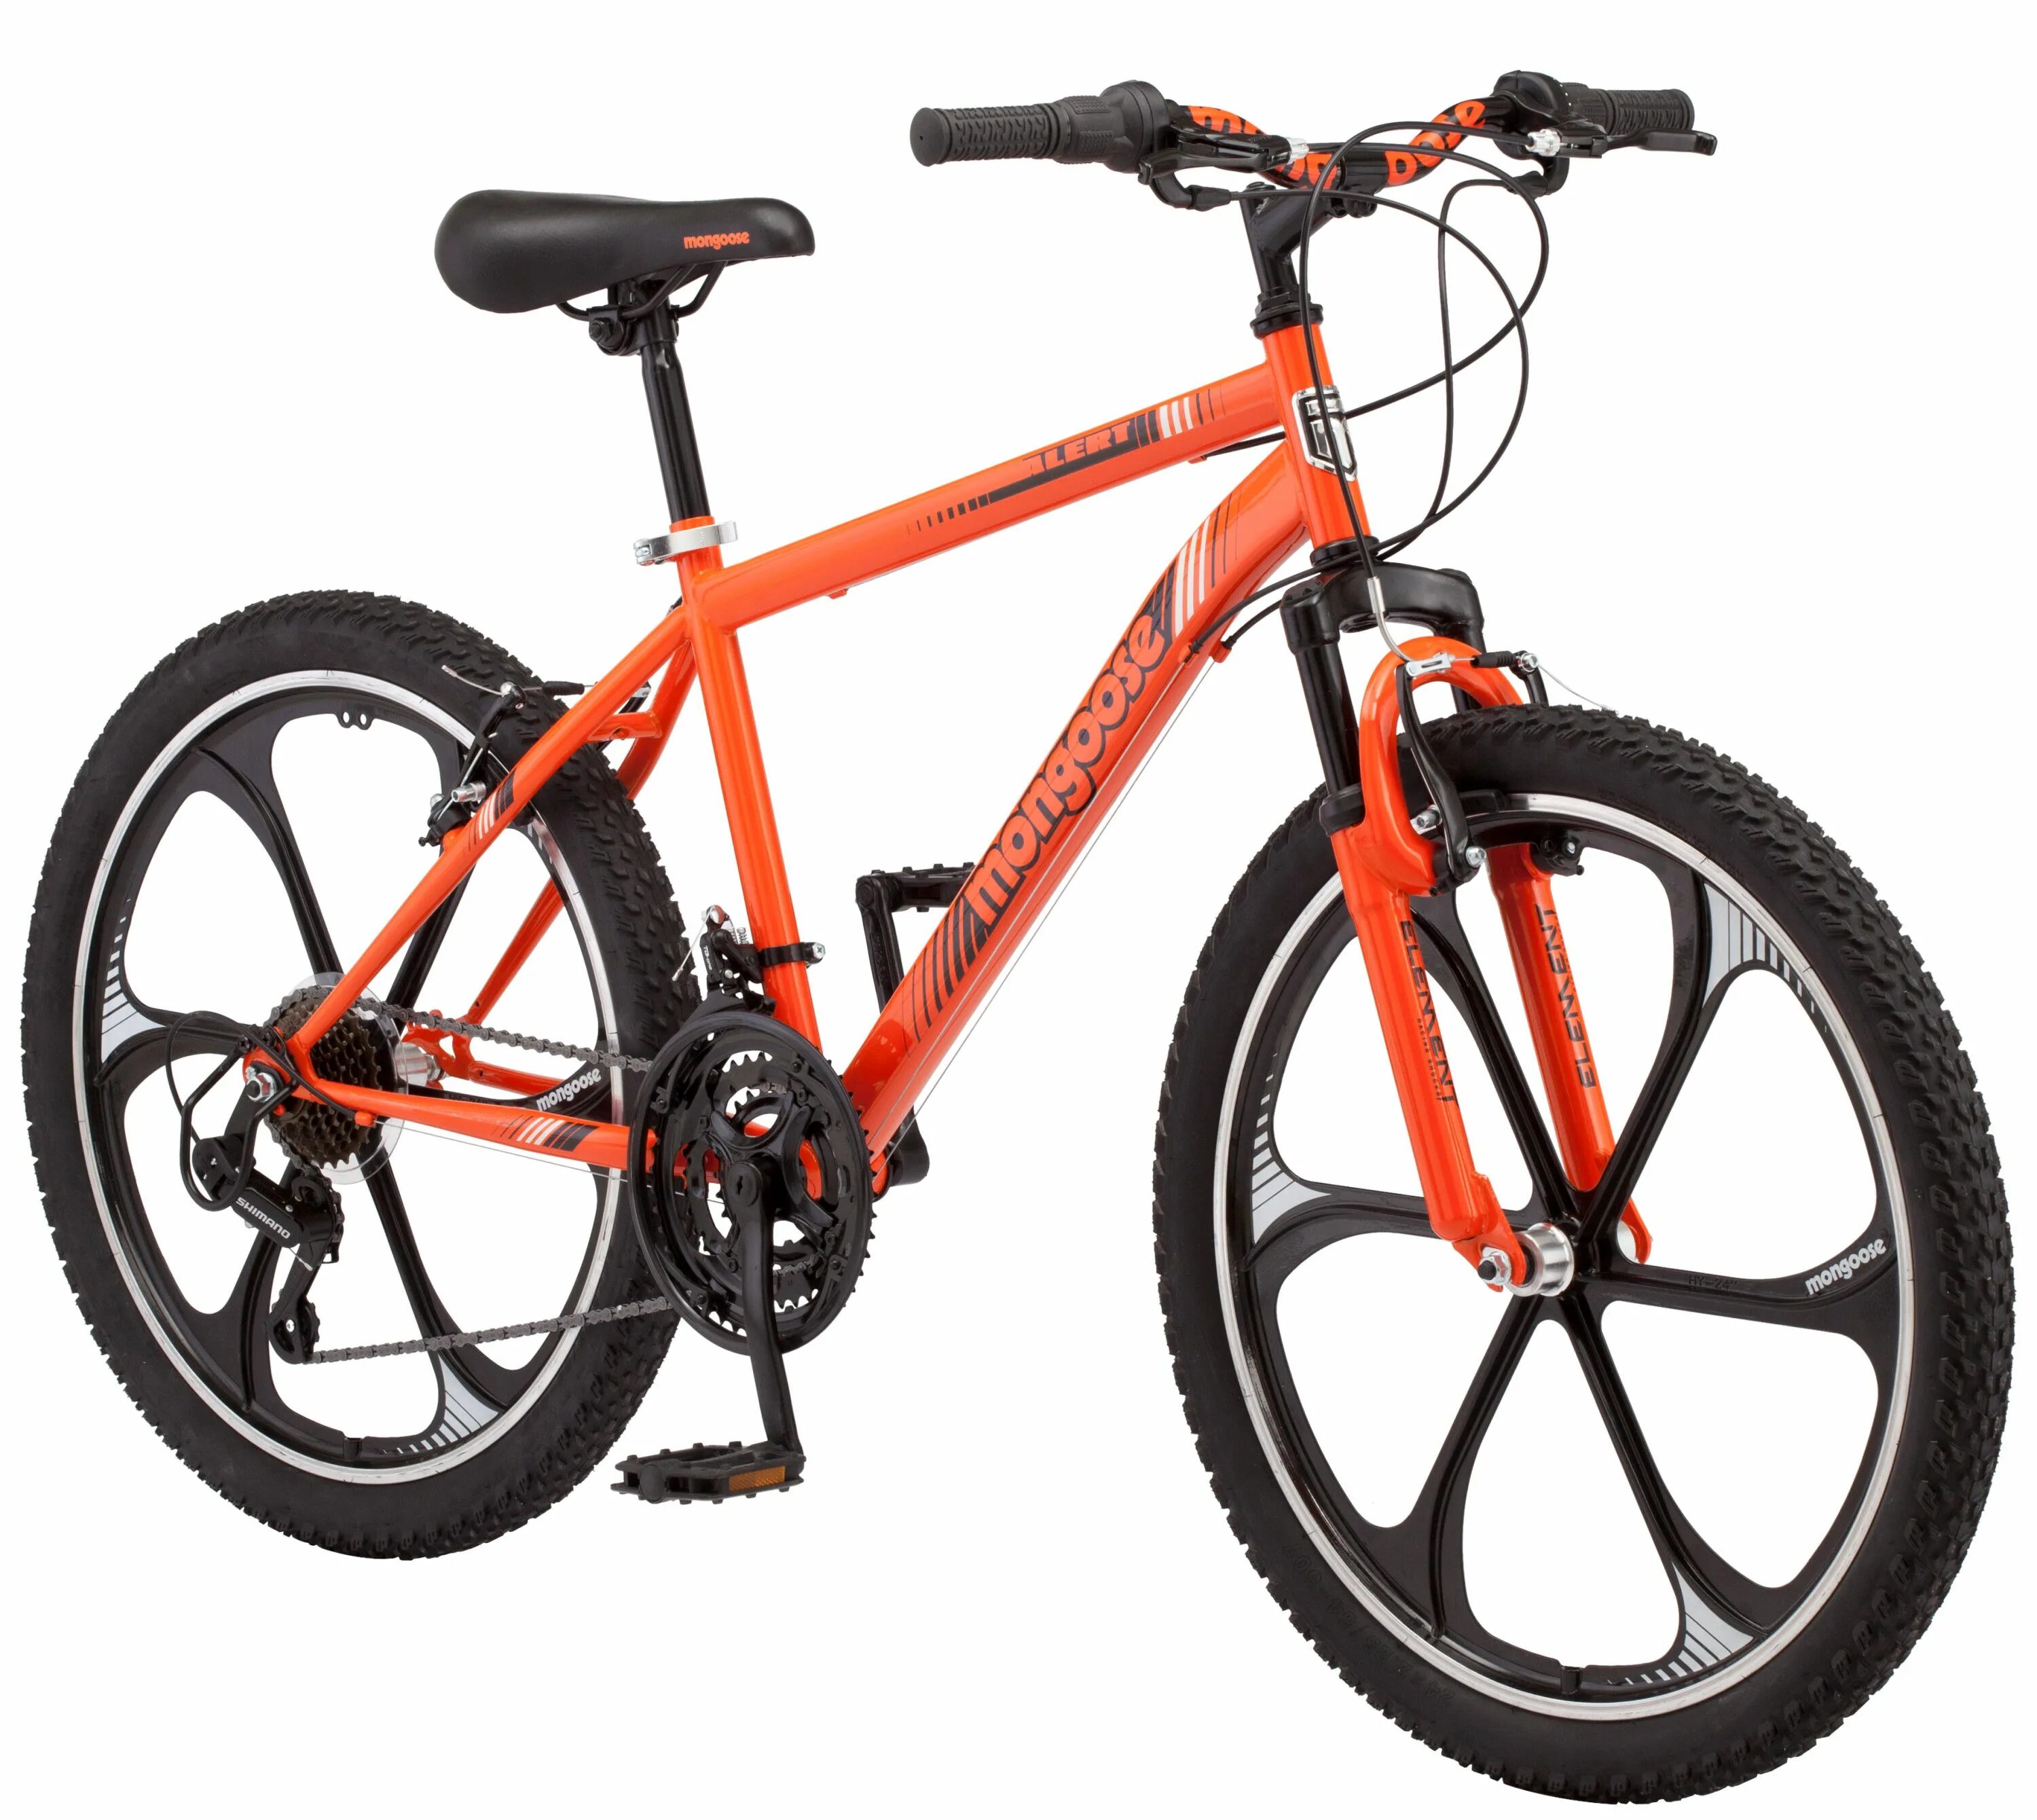 Какой фирмы купить велосипед. Горный велосипед Mongoose. Велосипед Mongoose 24. Велосипед Mongoose оранжевый. Мангуст велосипед горный 24.